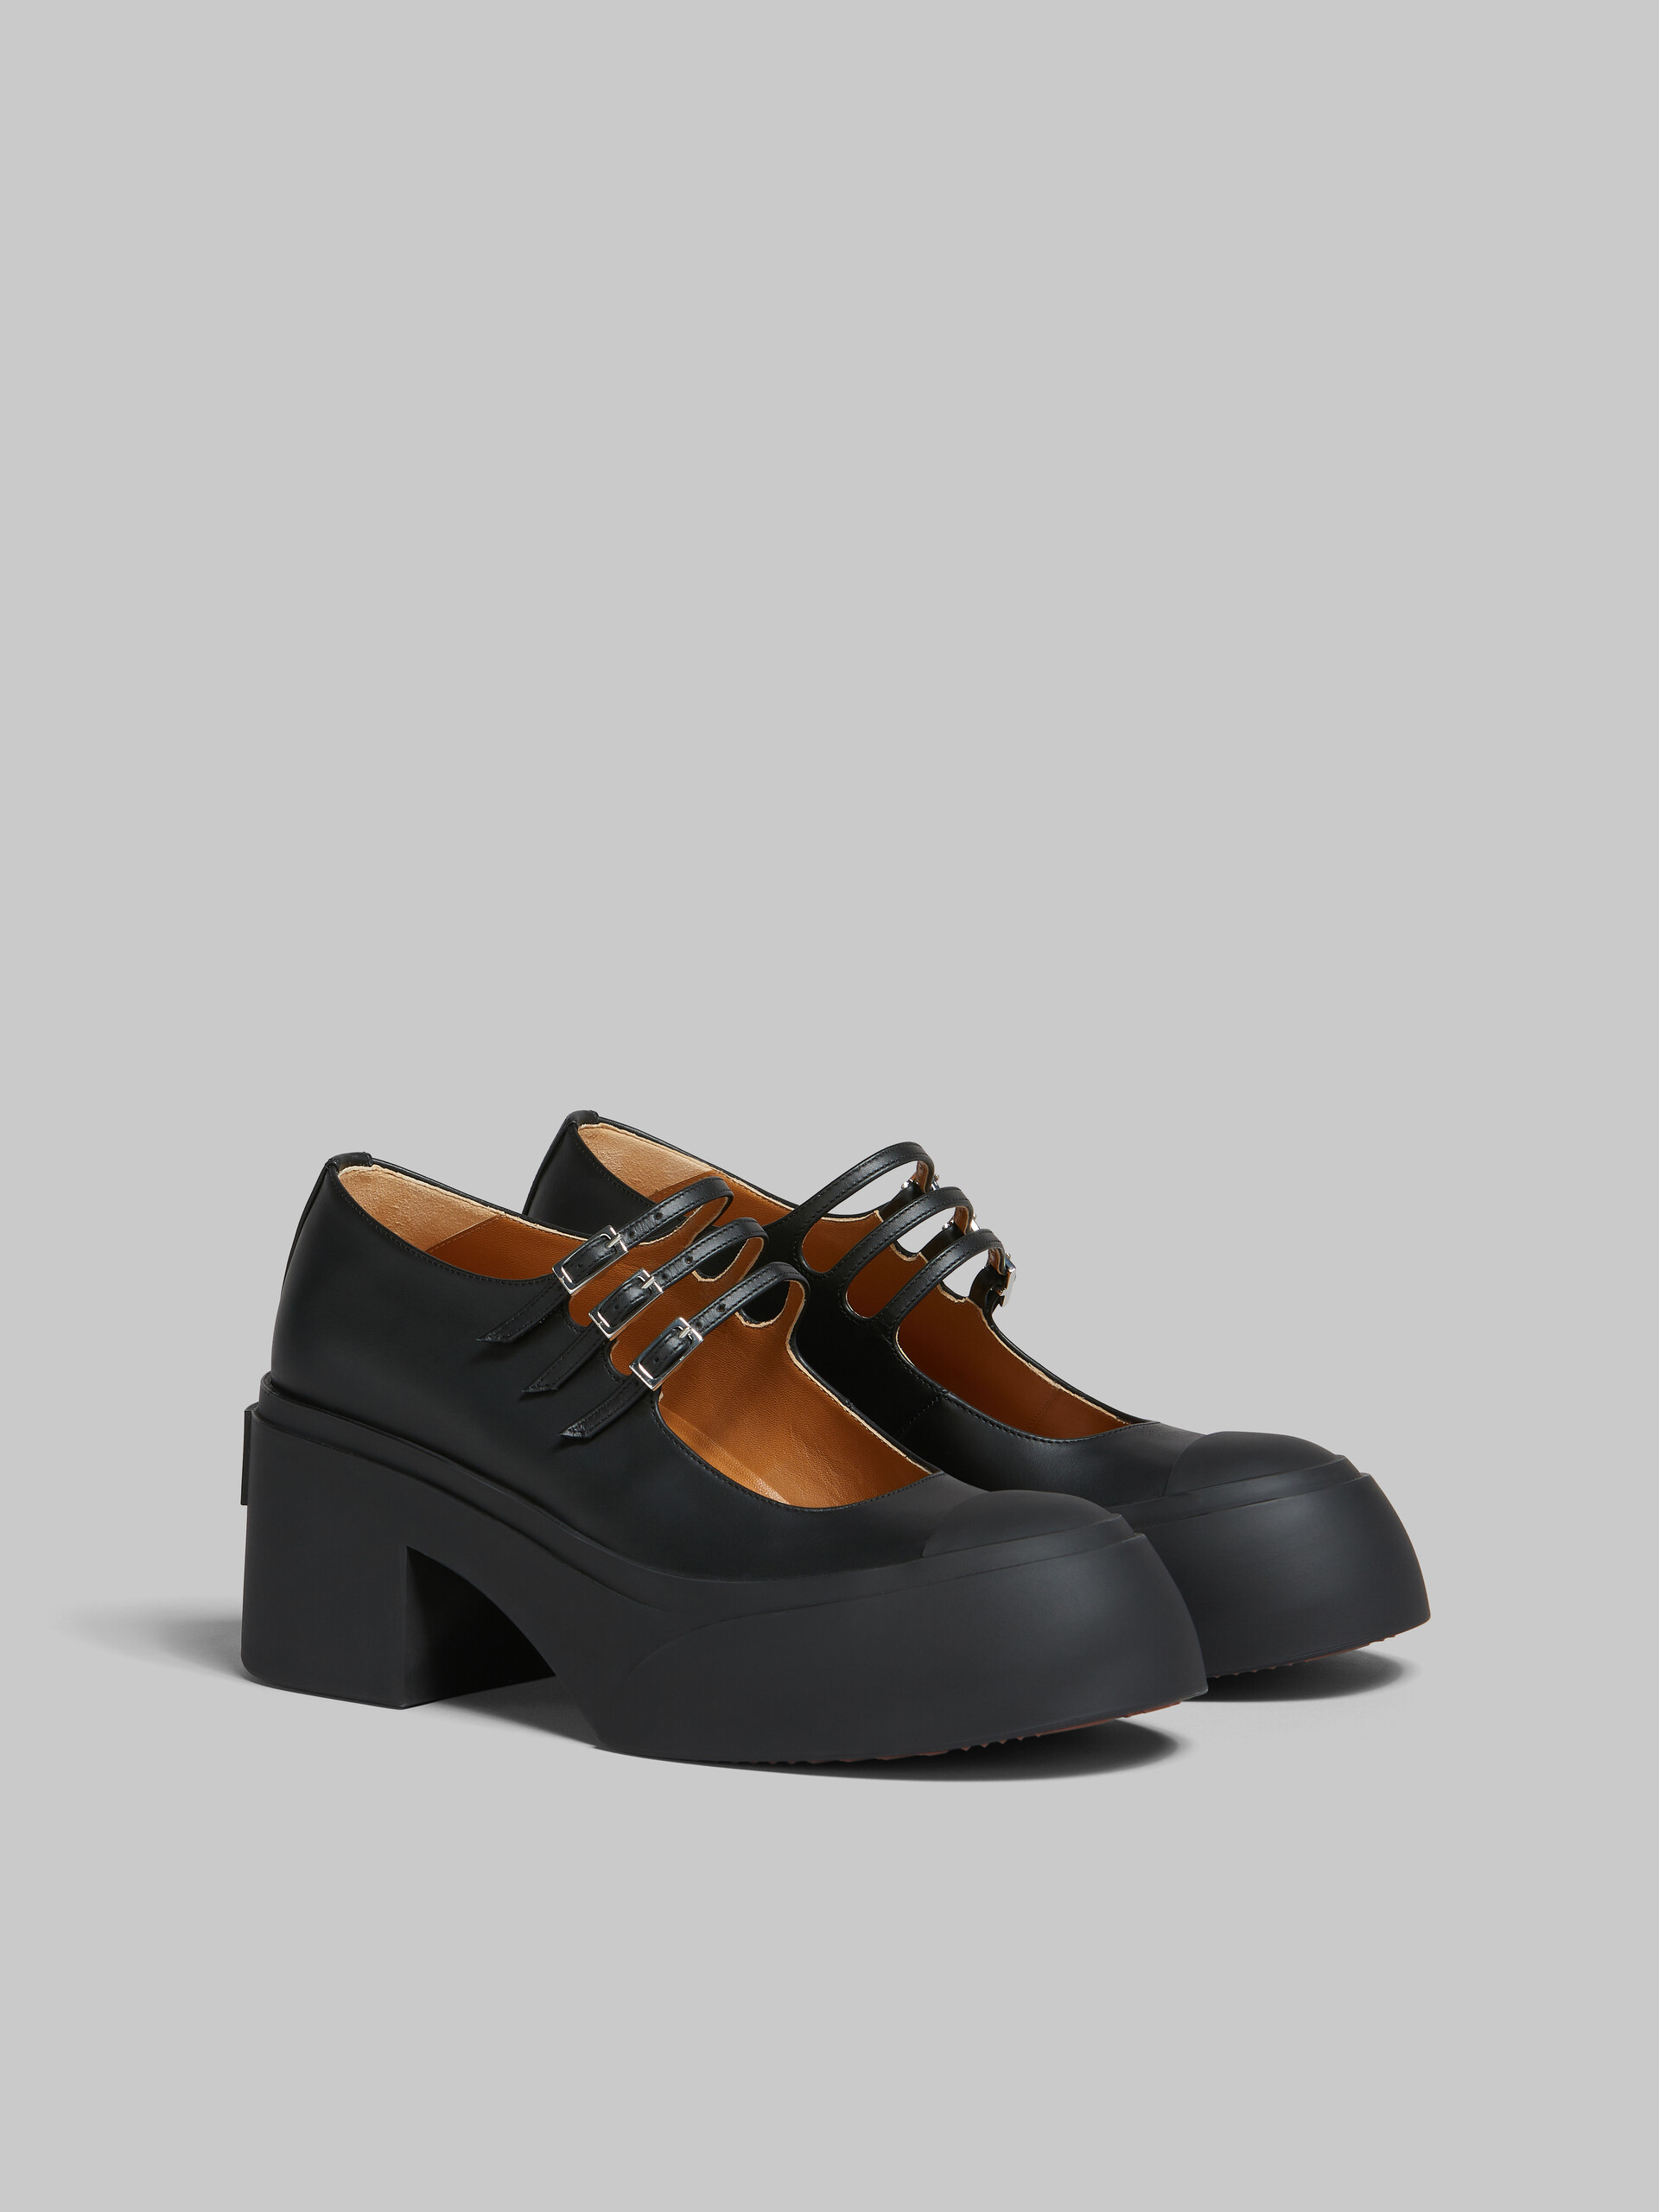 Zapatos Pablo estilo Mary Jane con triple hebilla de piel negra - Sneakers - Image 2